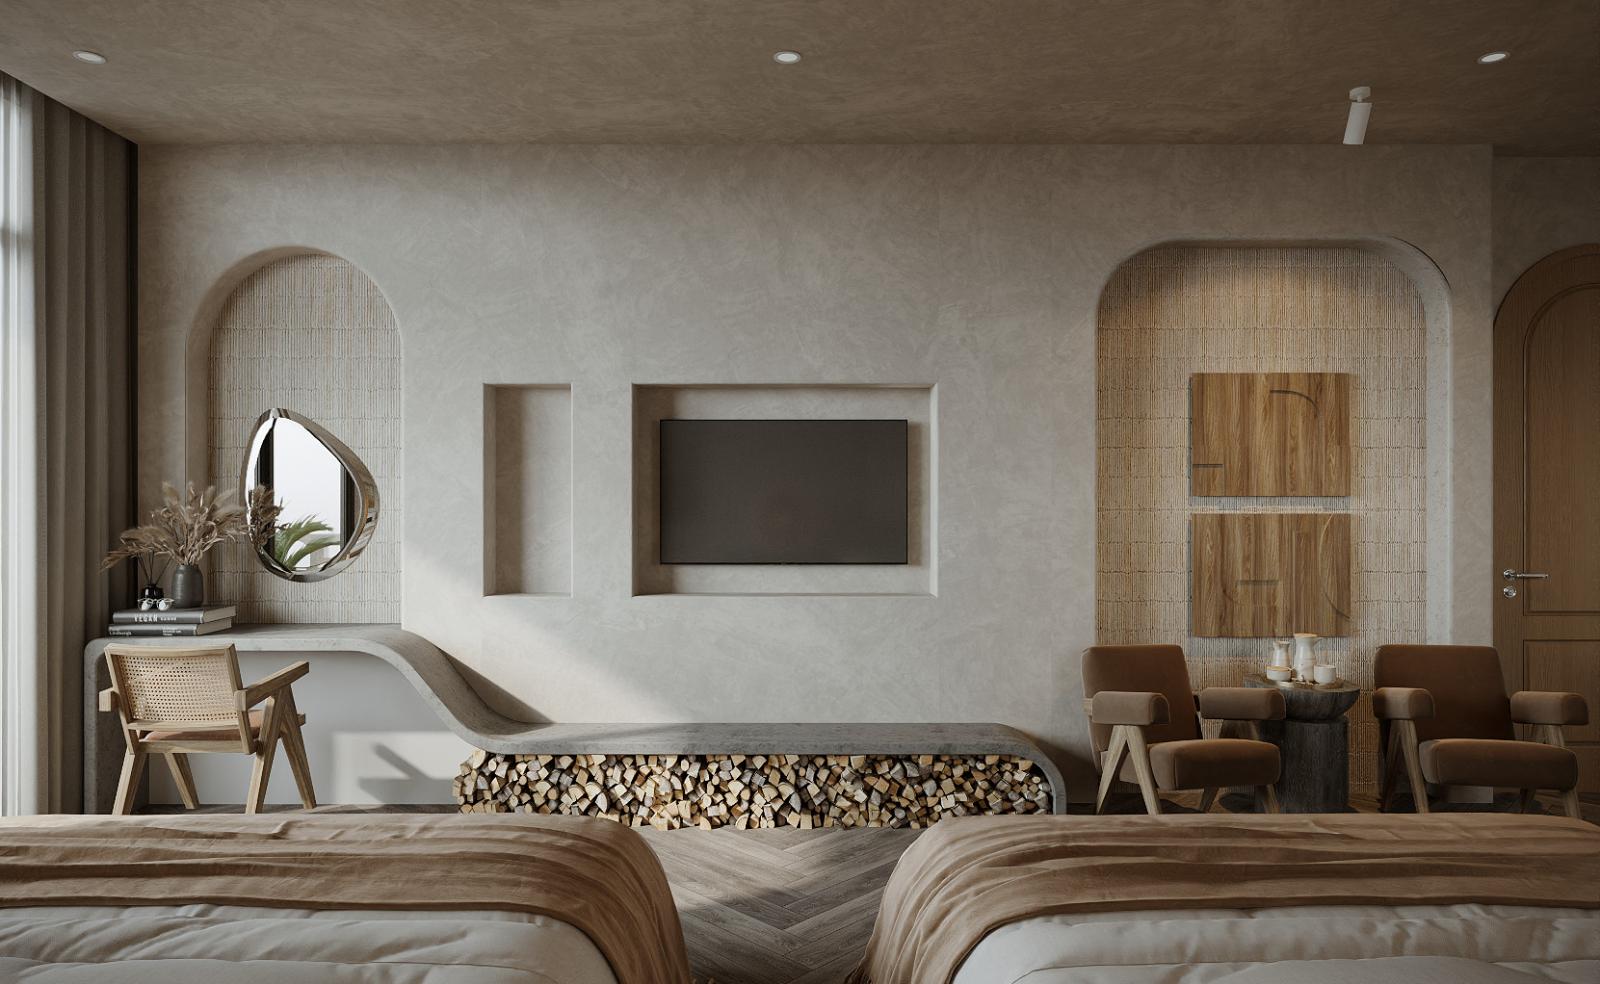 Mảng tường đối diện chân giường được decor đơn giản mà ấn tượng với bàn trang điểm có gương hình giọt nước, kệ tivi, ghế ngồi êm ái.